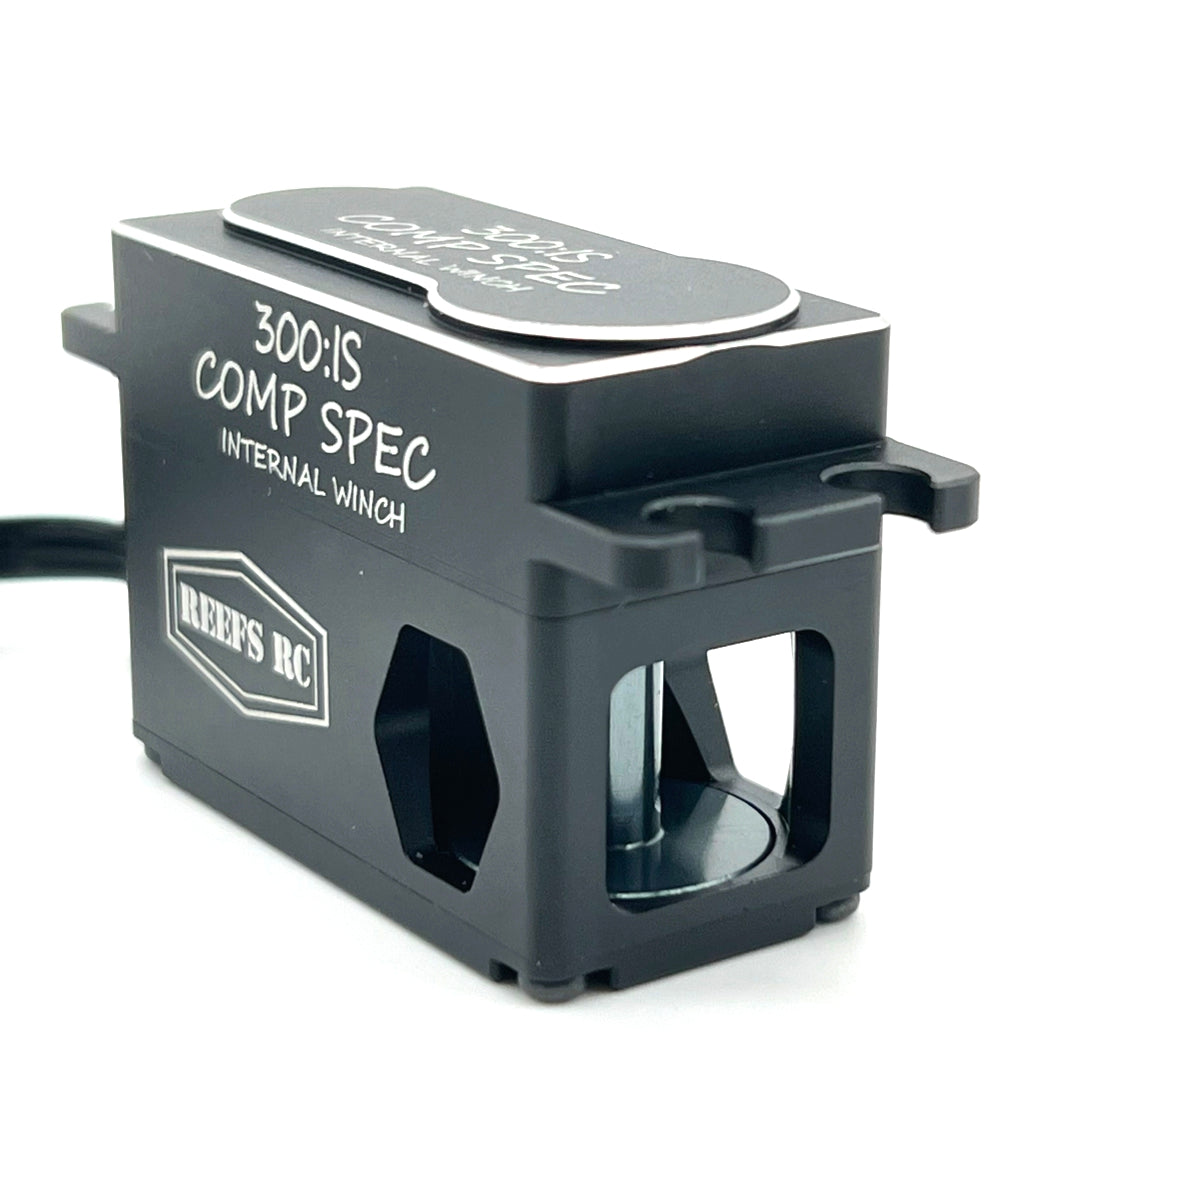 Reefs 300 IS Comp Spec Internal Spool Servo Winch